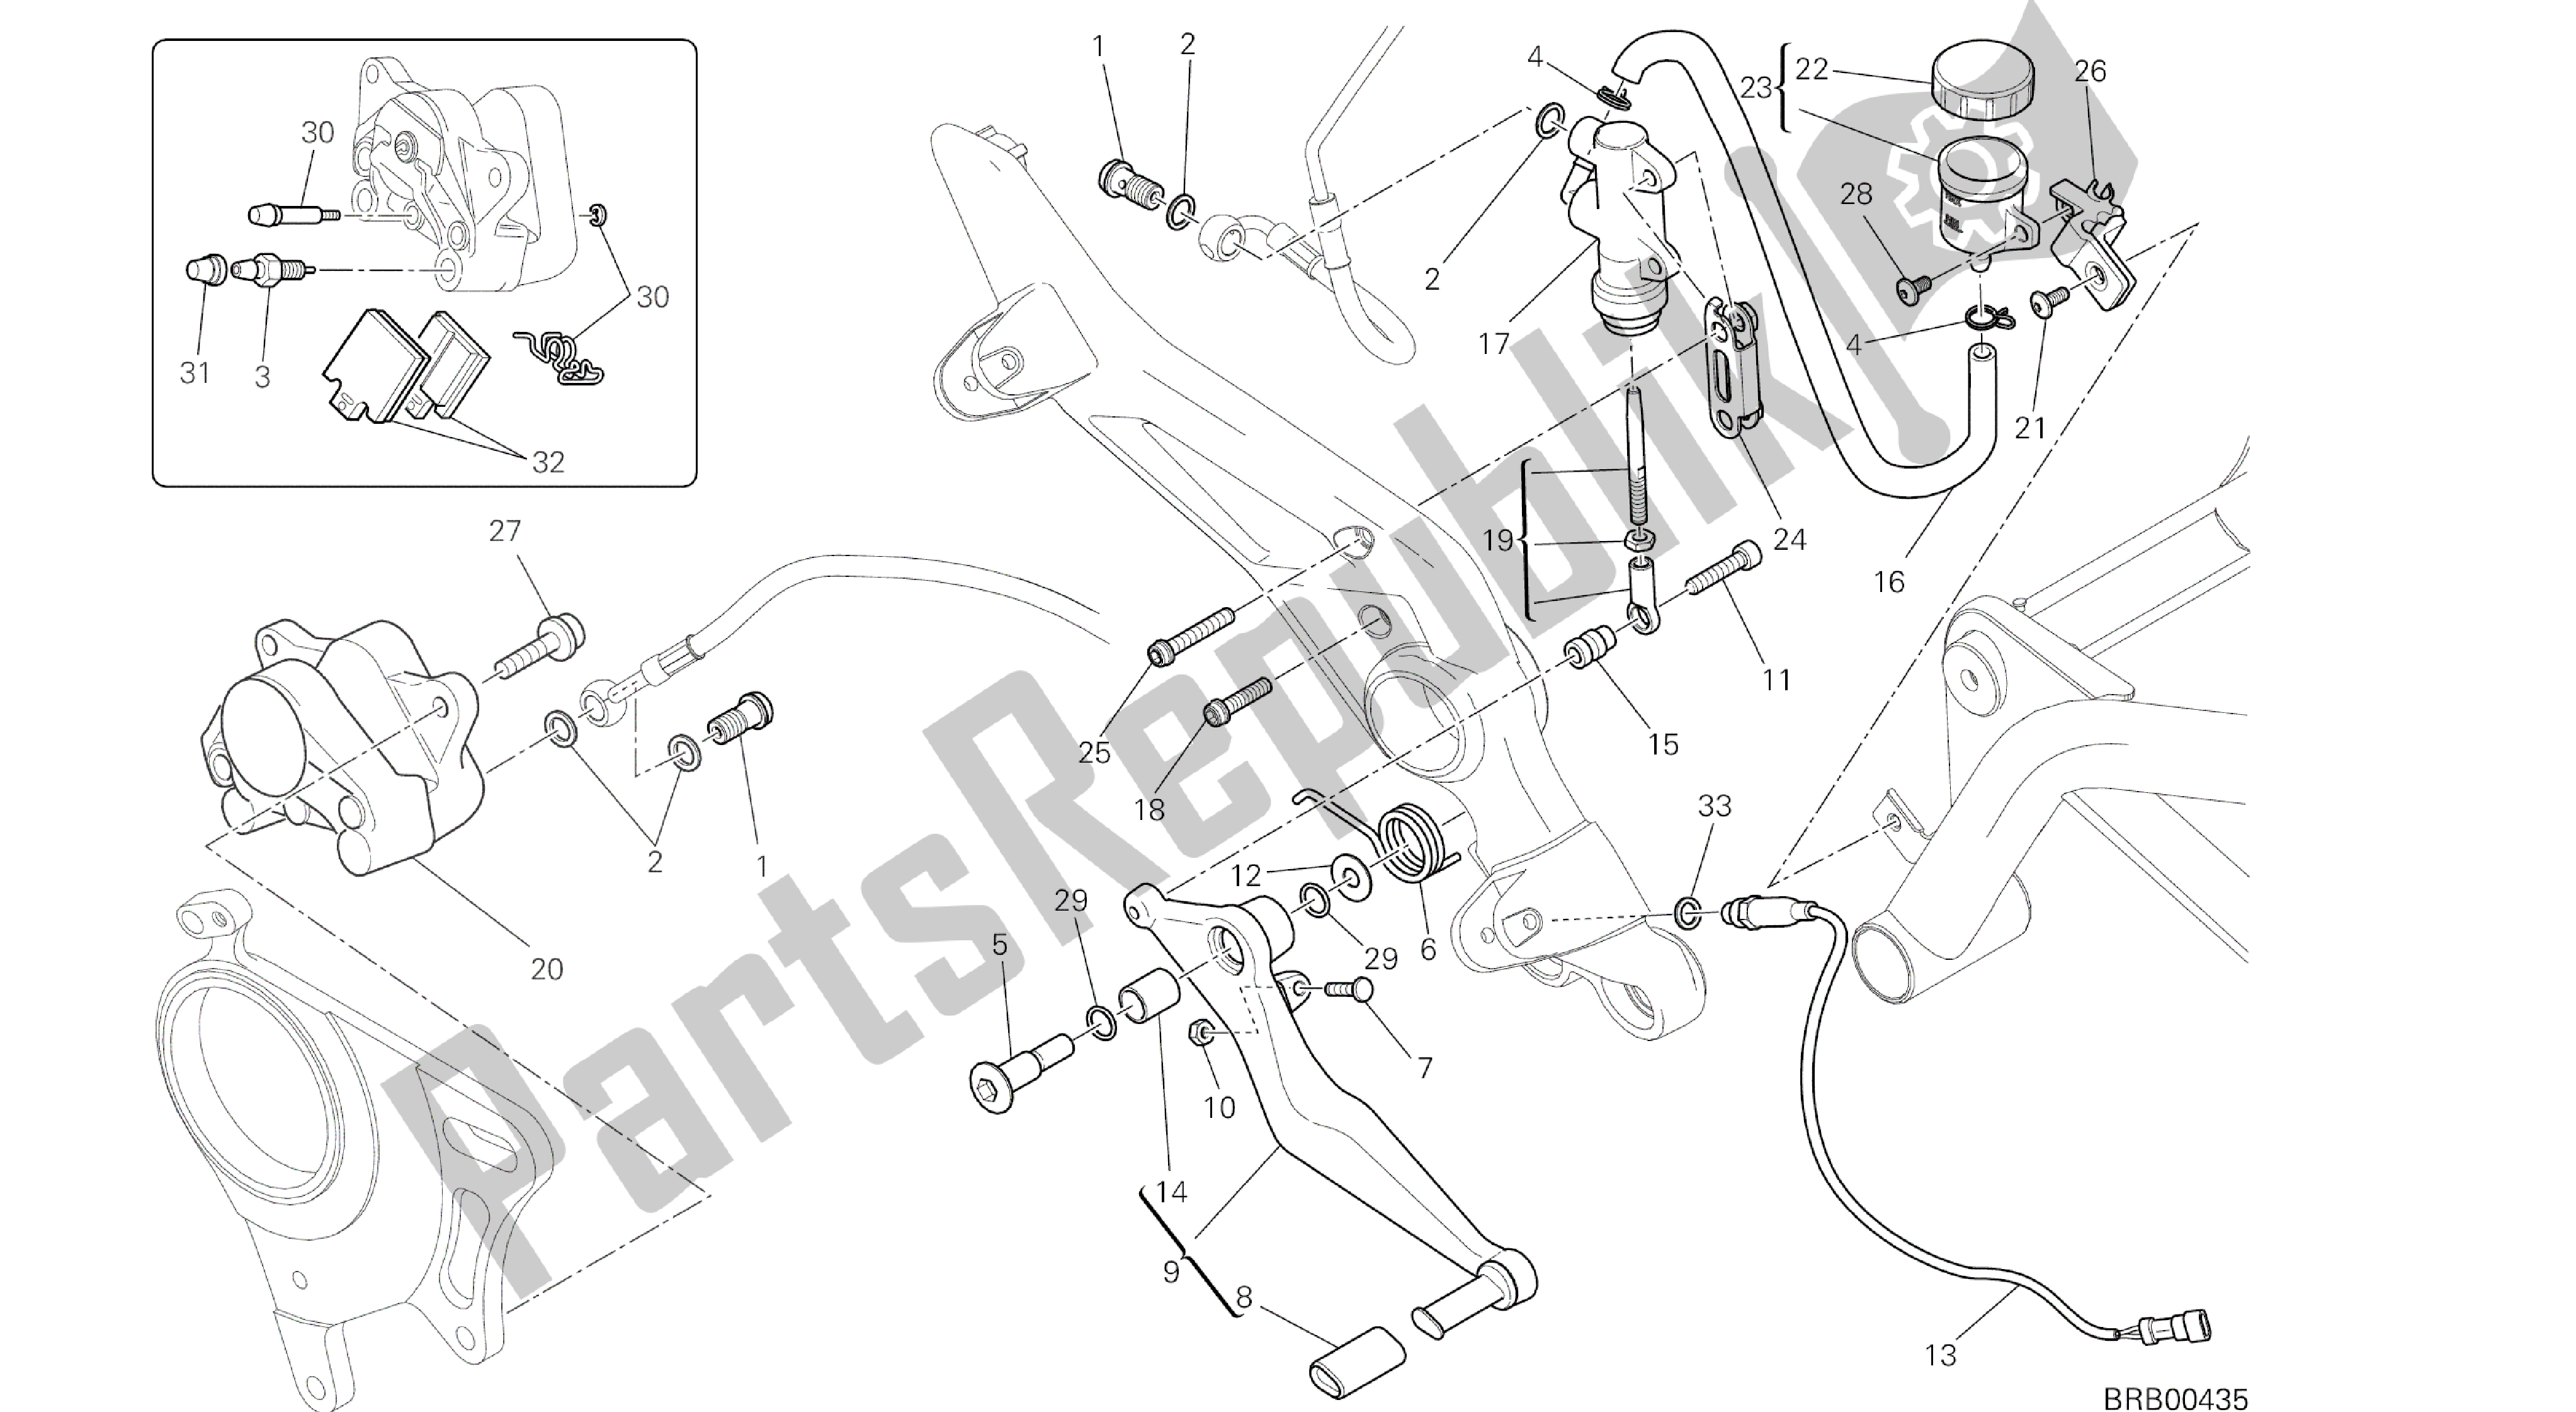 Todas las partes para Dibujo 025 - Sistema De Freno Trasero [mod: Hypstr; Xst: Marco De Grupo Aus, Chn, Eur, Fra, Jap, Tha, Twn] de Ducati Hypermotard 821 2014